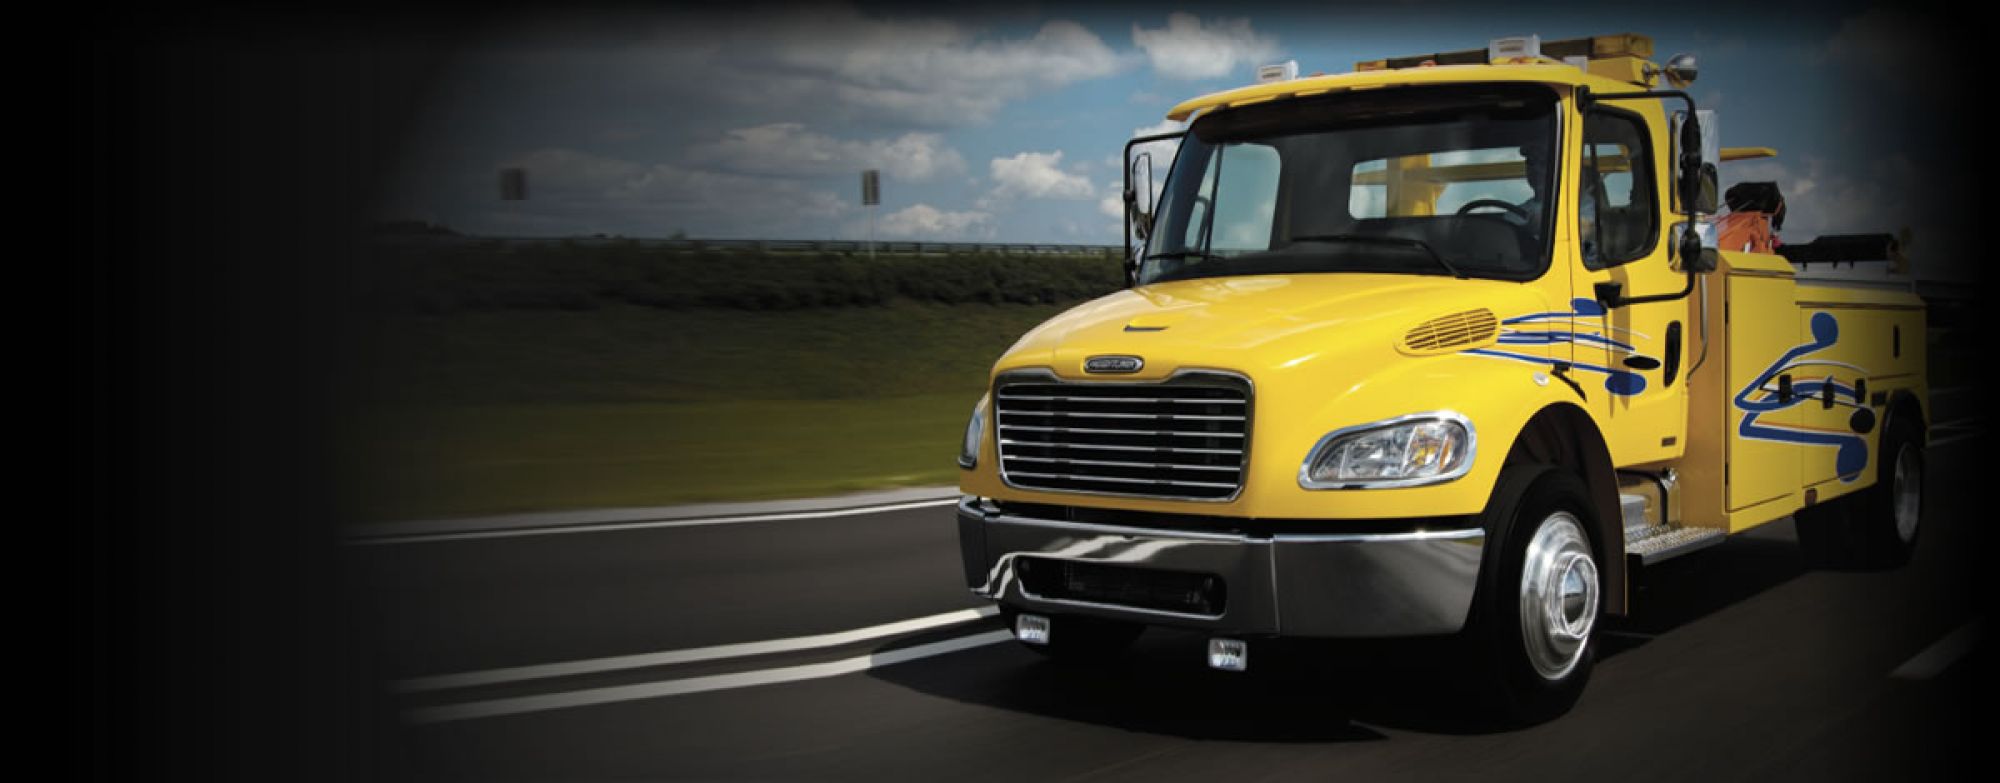 (713) 893-8047, (713) 377-2005 - Houston (Texas) Commercial Truck Insurance